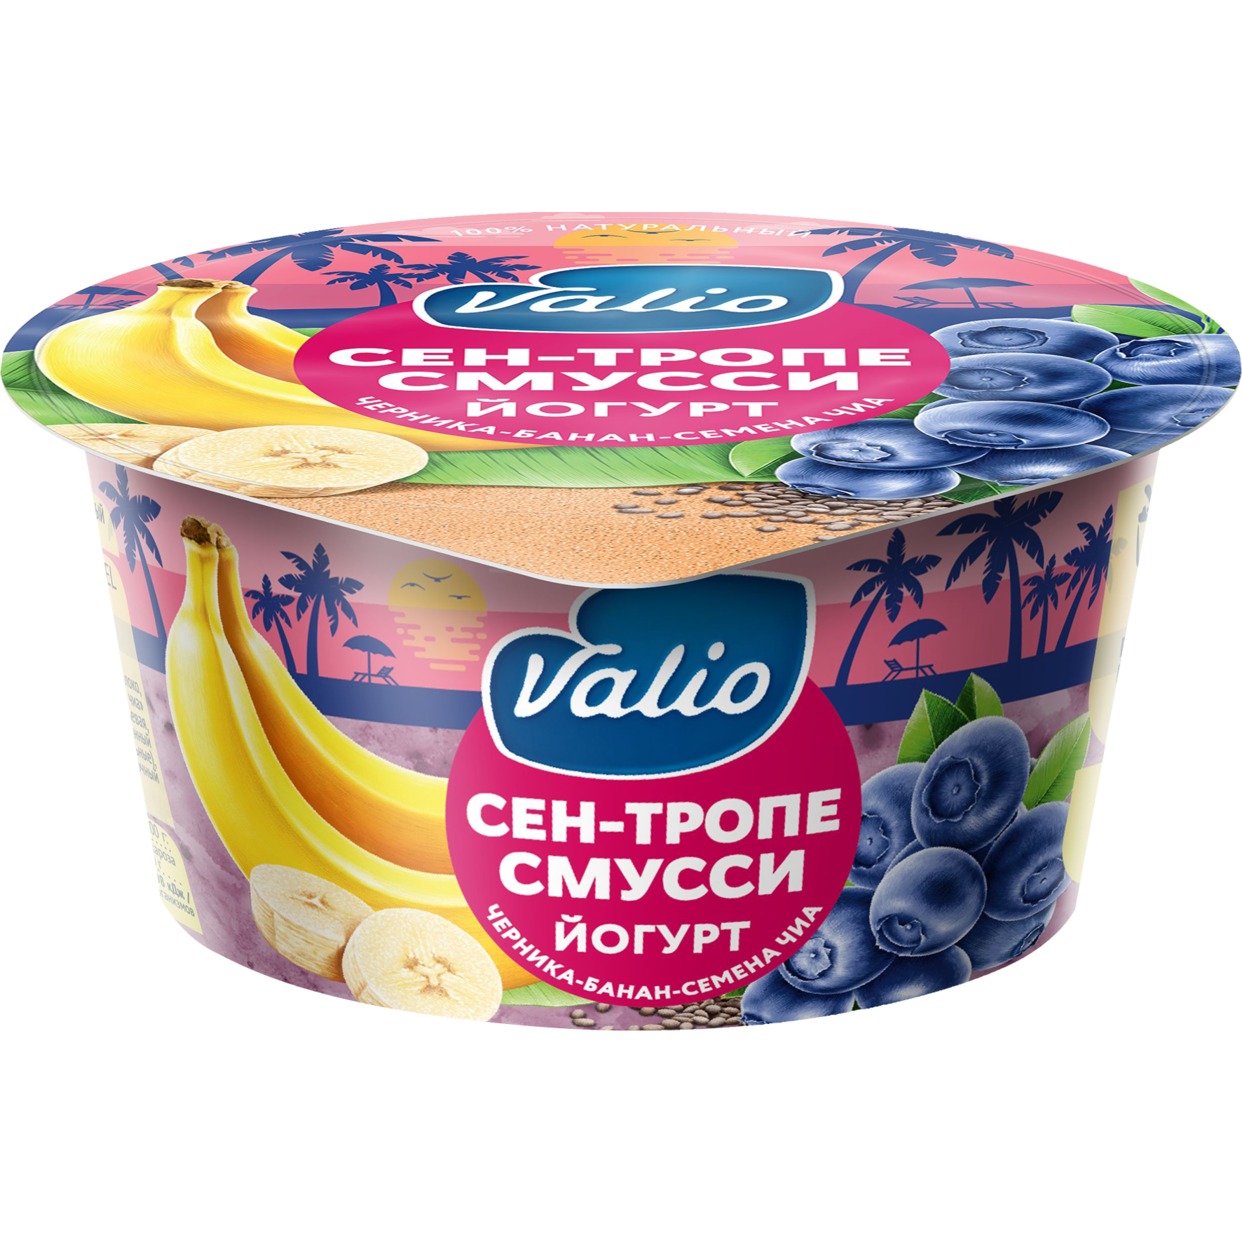 БЗМЖ Йогурт «Valio Clean label Сен-Тропе смусси» с черникой, бананом и семенами чиа. Мдж 2,6%, 140г